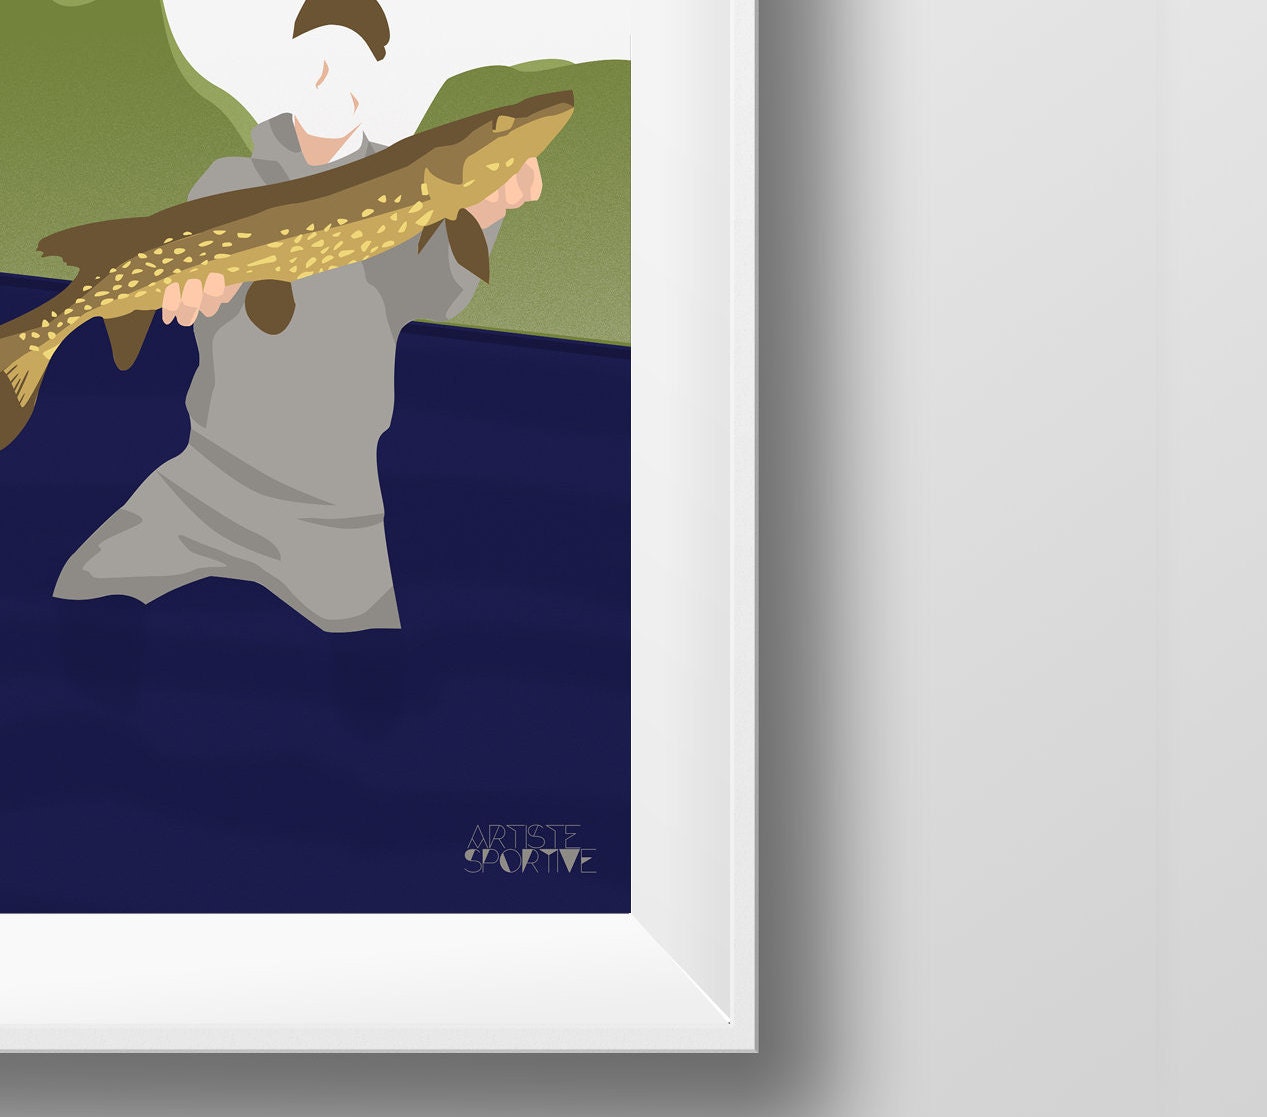 Affiche Pêche "Antoine le pêcheur"